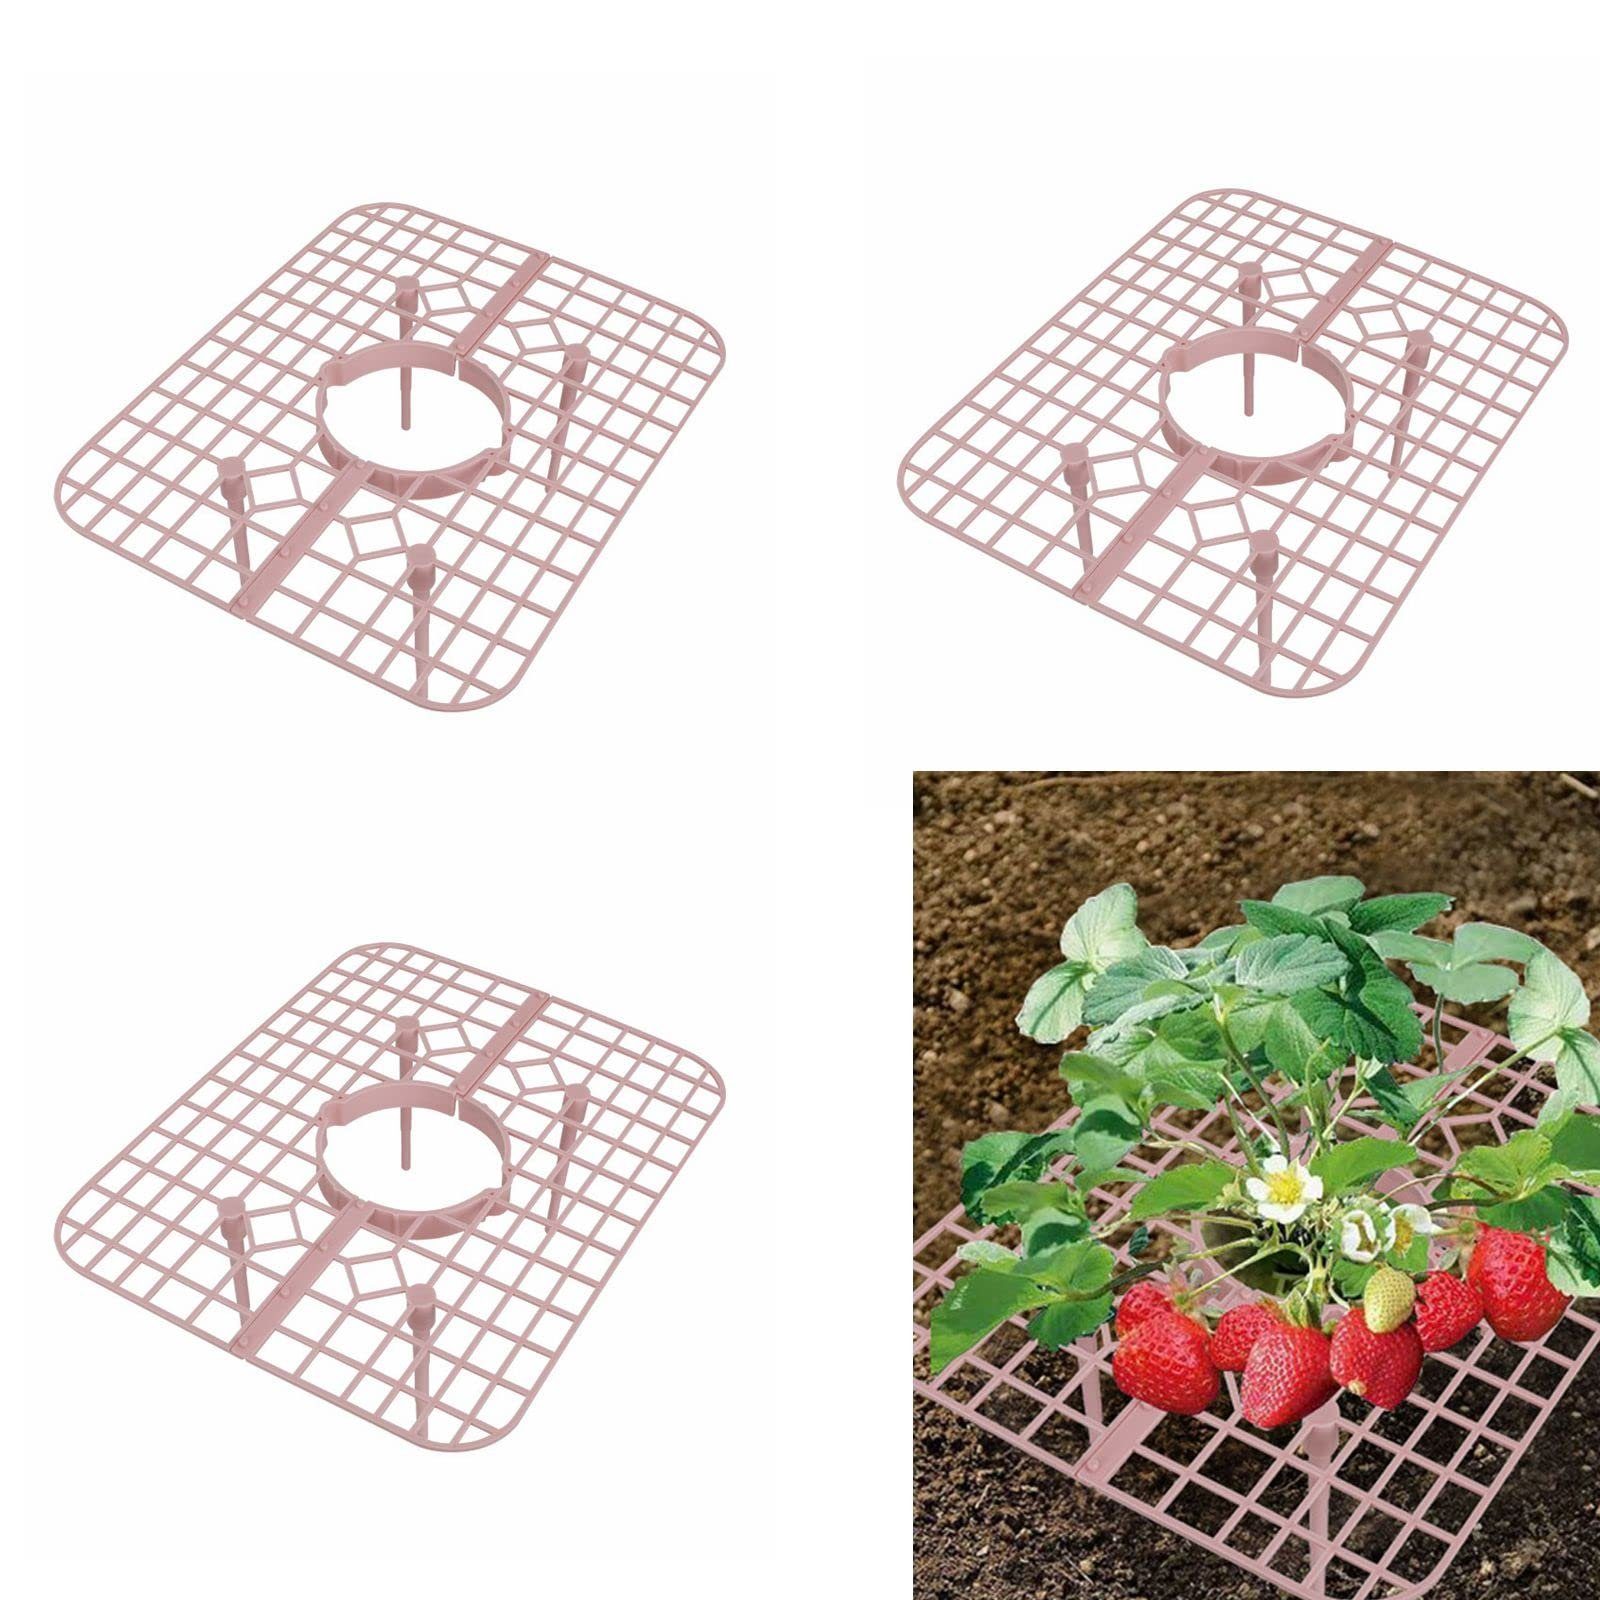 SEEZSSA Blumenständer 10 Stück Erdbeer-Pflanzenstützung für Gartenständer,Gemüserega, Dreidimensionaler Erdbeerständer mit 4 Beinen,25 x 20 x 9 cm Rosa